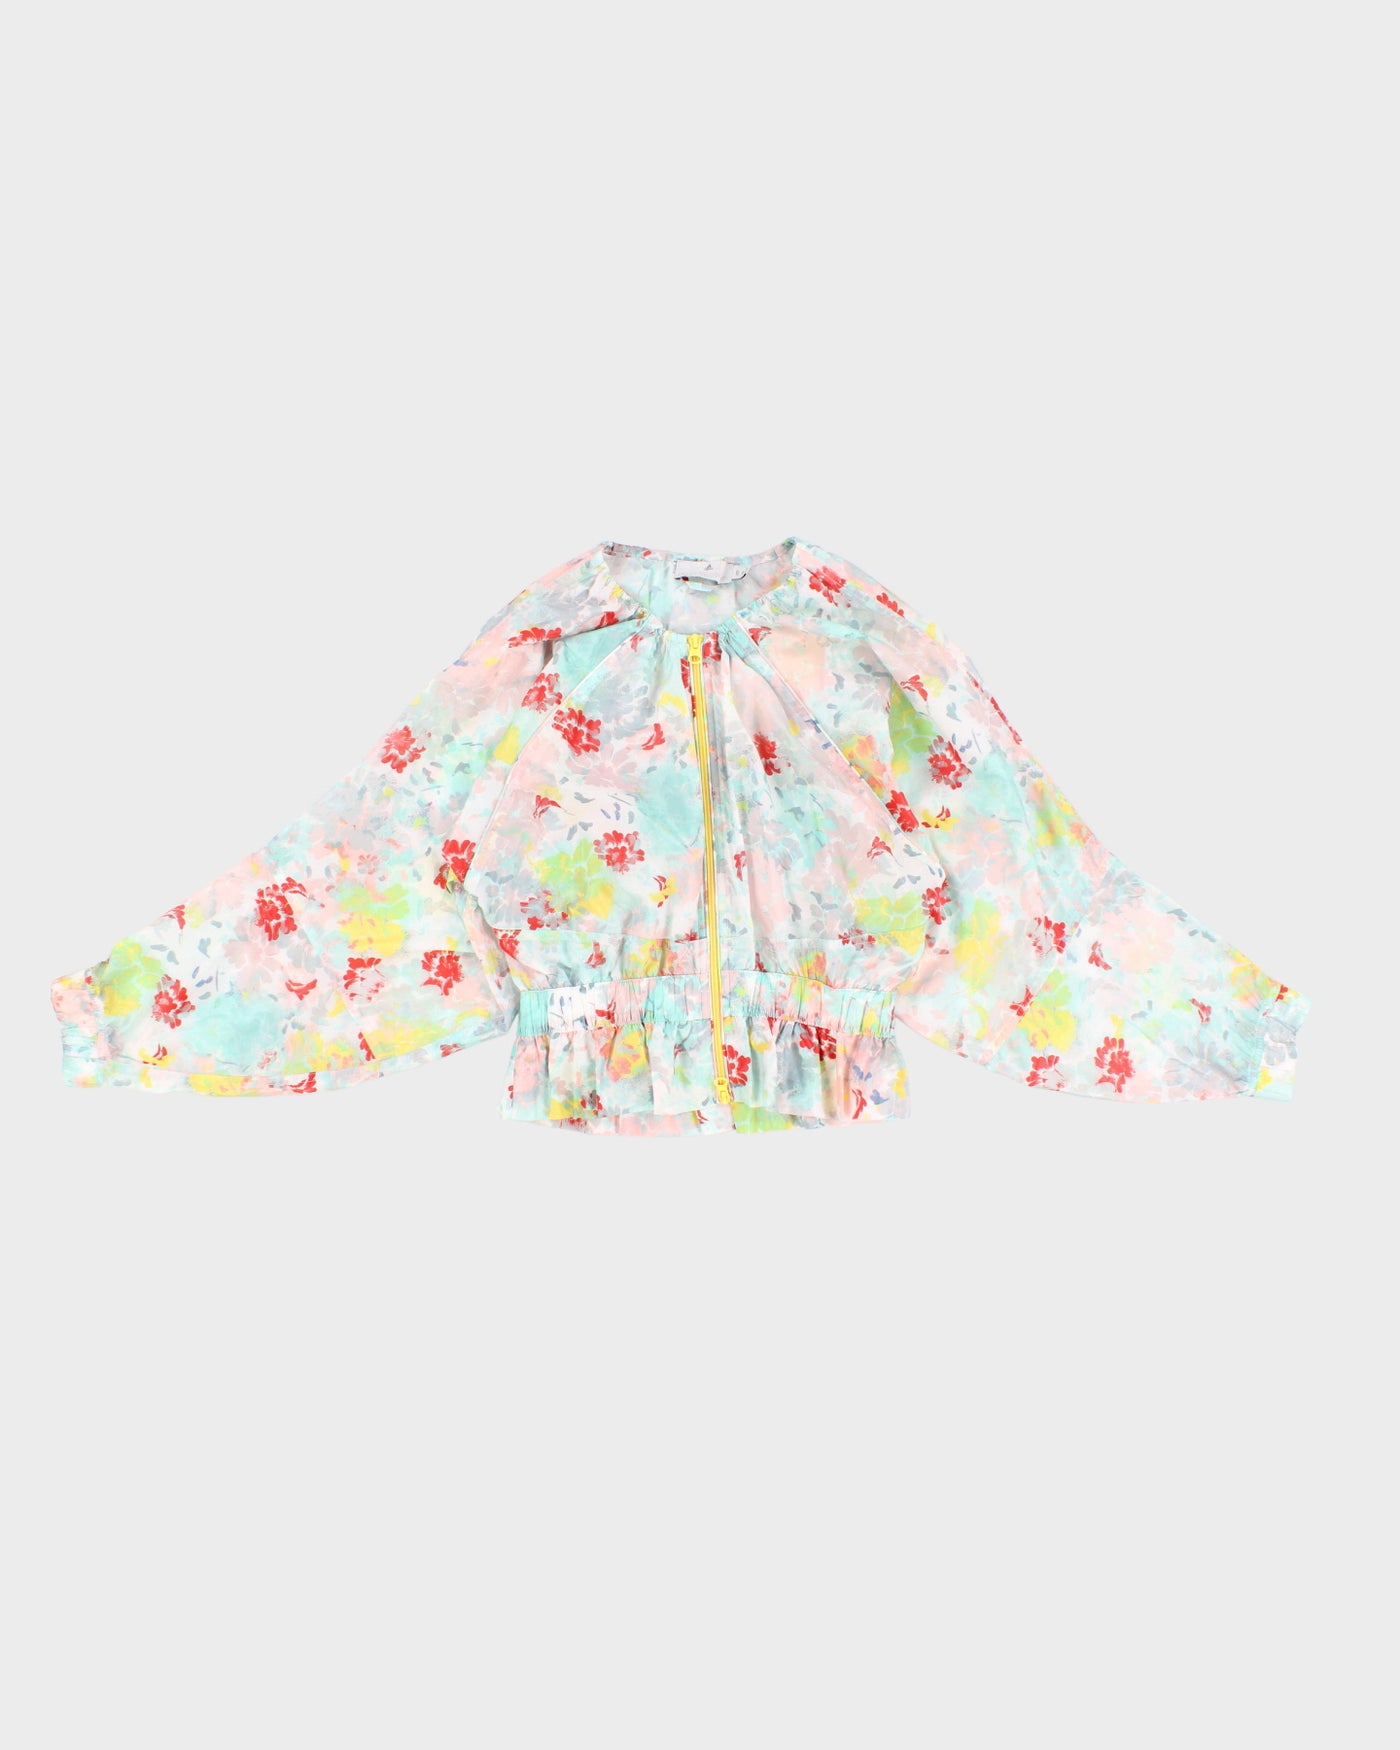 Stella McCartney x Adidas Floral Jacket - M